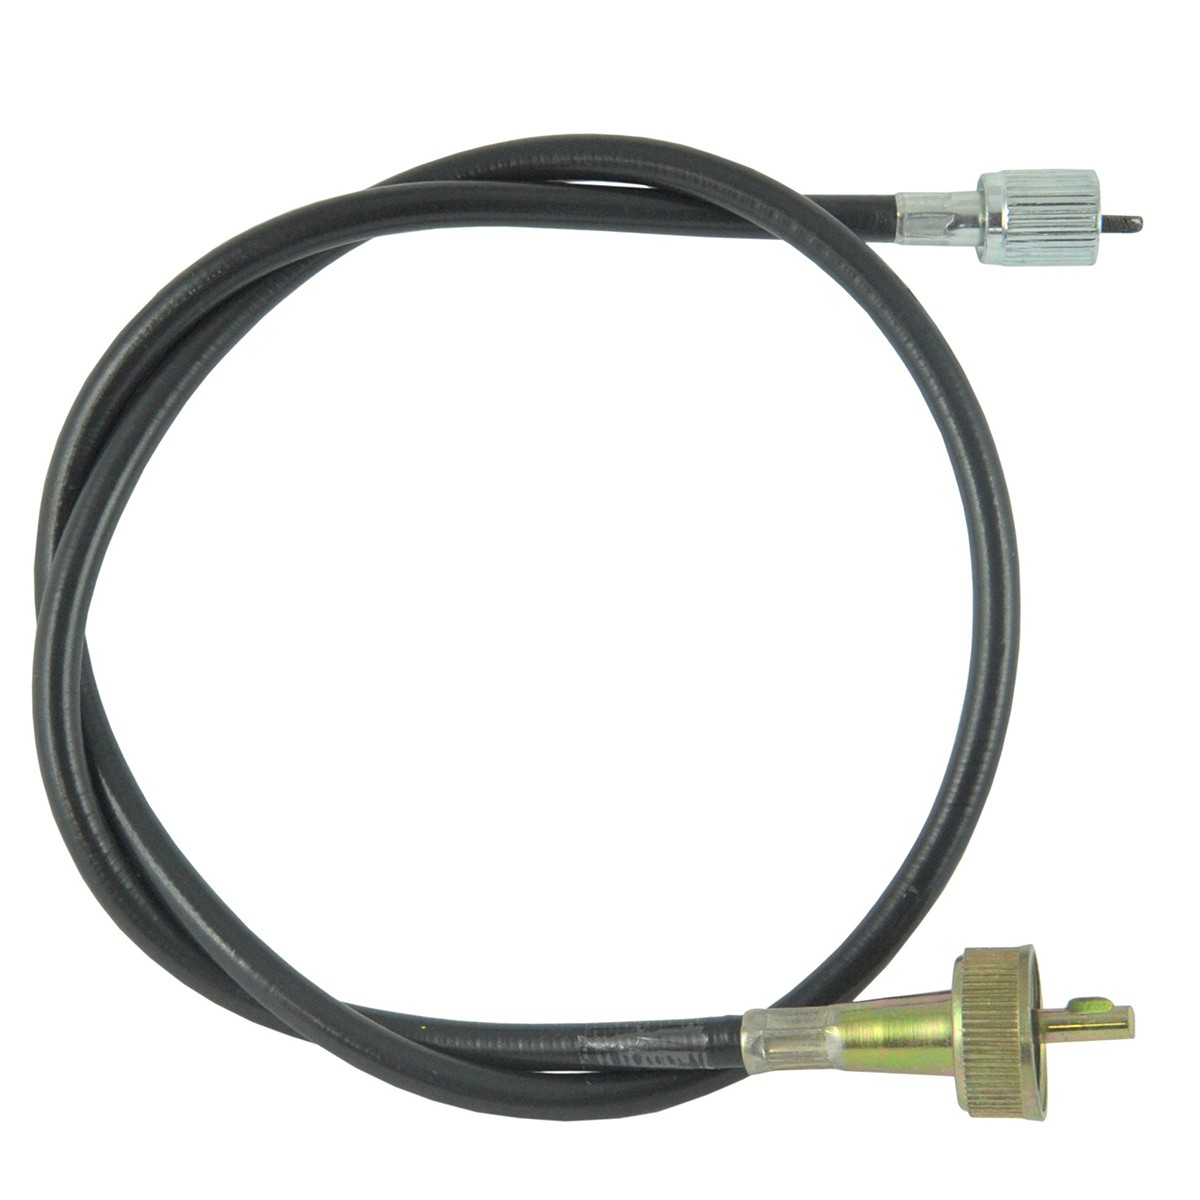 Counter cable / 825 mm / Iseki TA230/TE4350/TE4270/TS2205/TU2300 / 1444-621-003-00 / 9-25-107-04